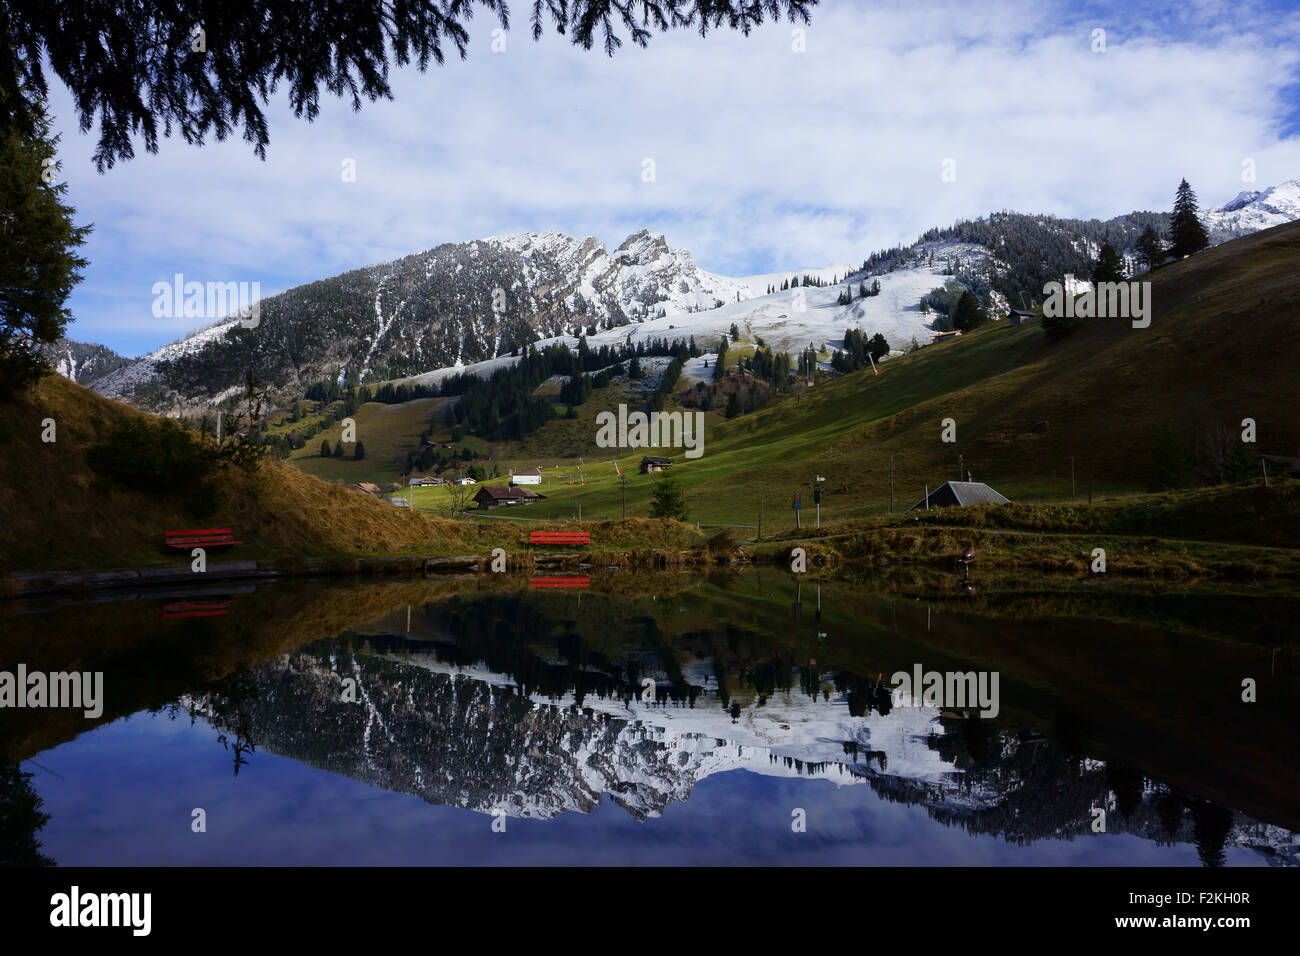 Blauseeli, Schwenden, Diemtigtal, Bernese alps, Switzerland Stock Photo